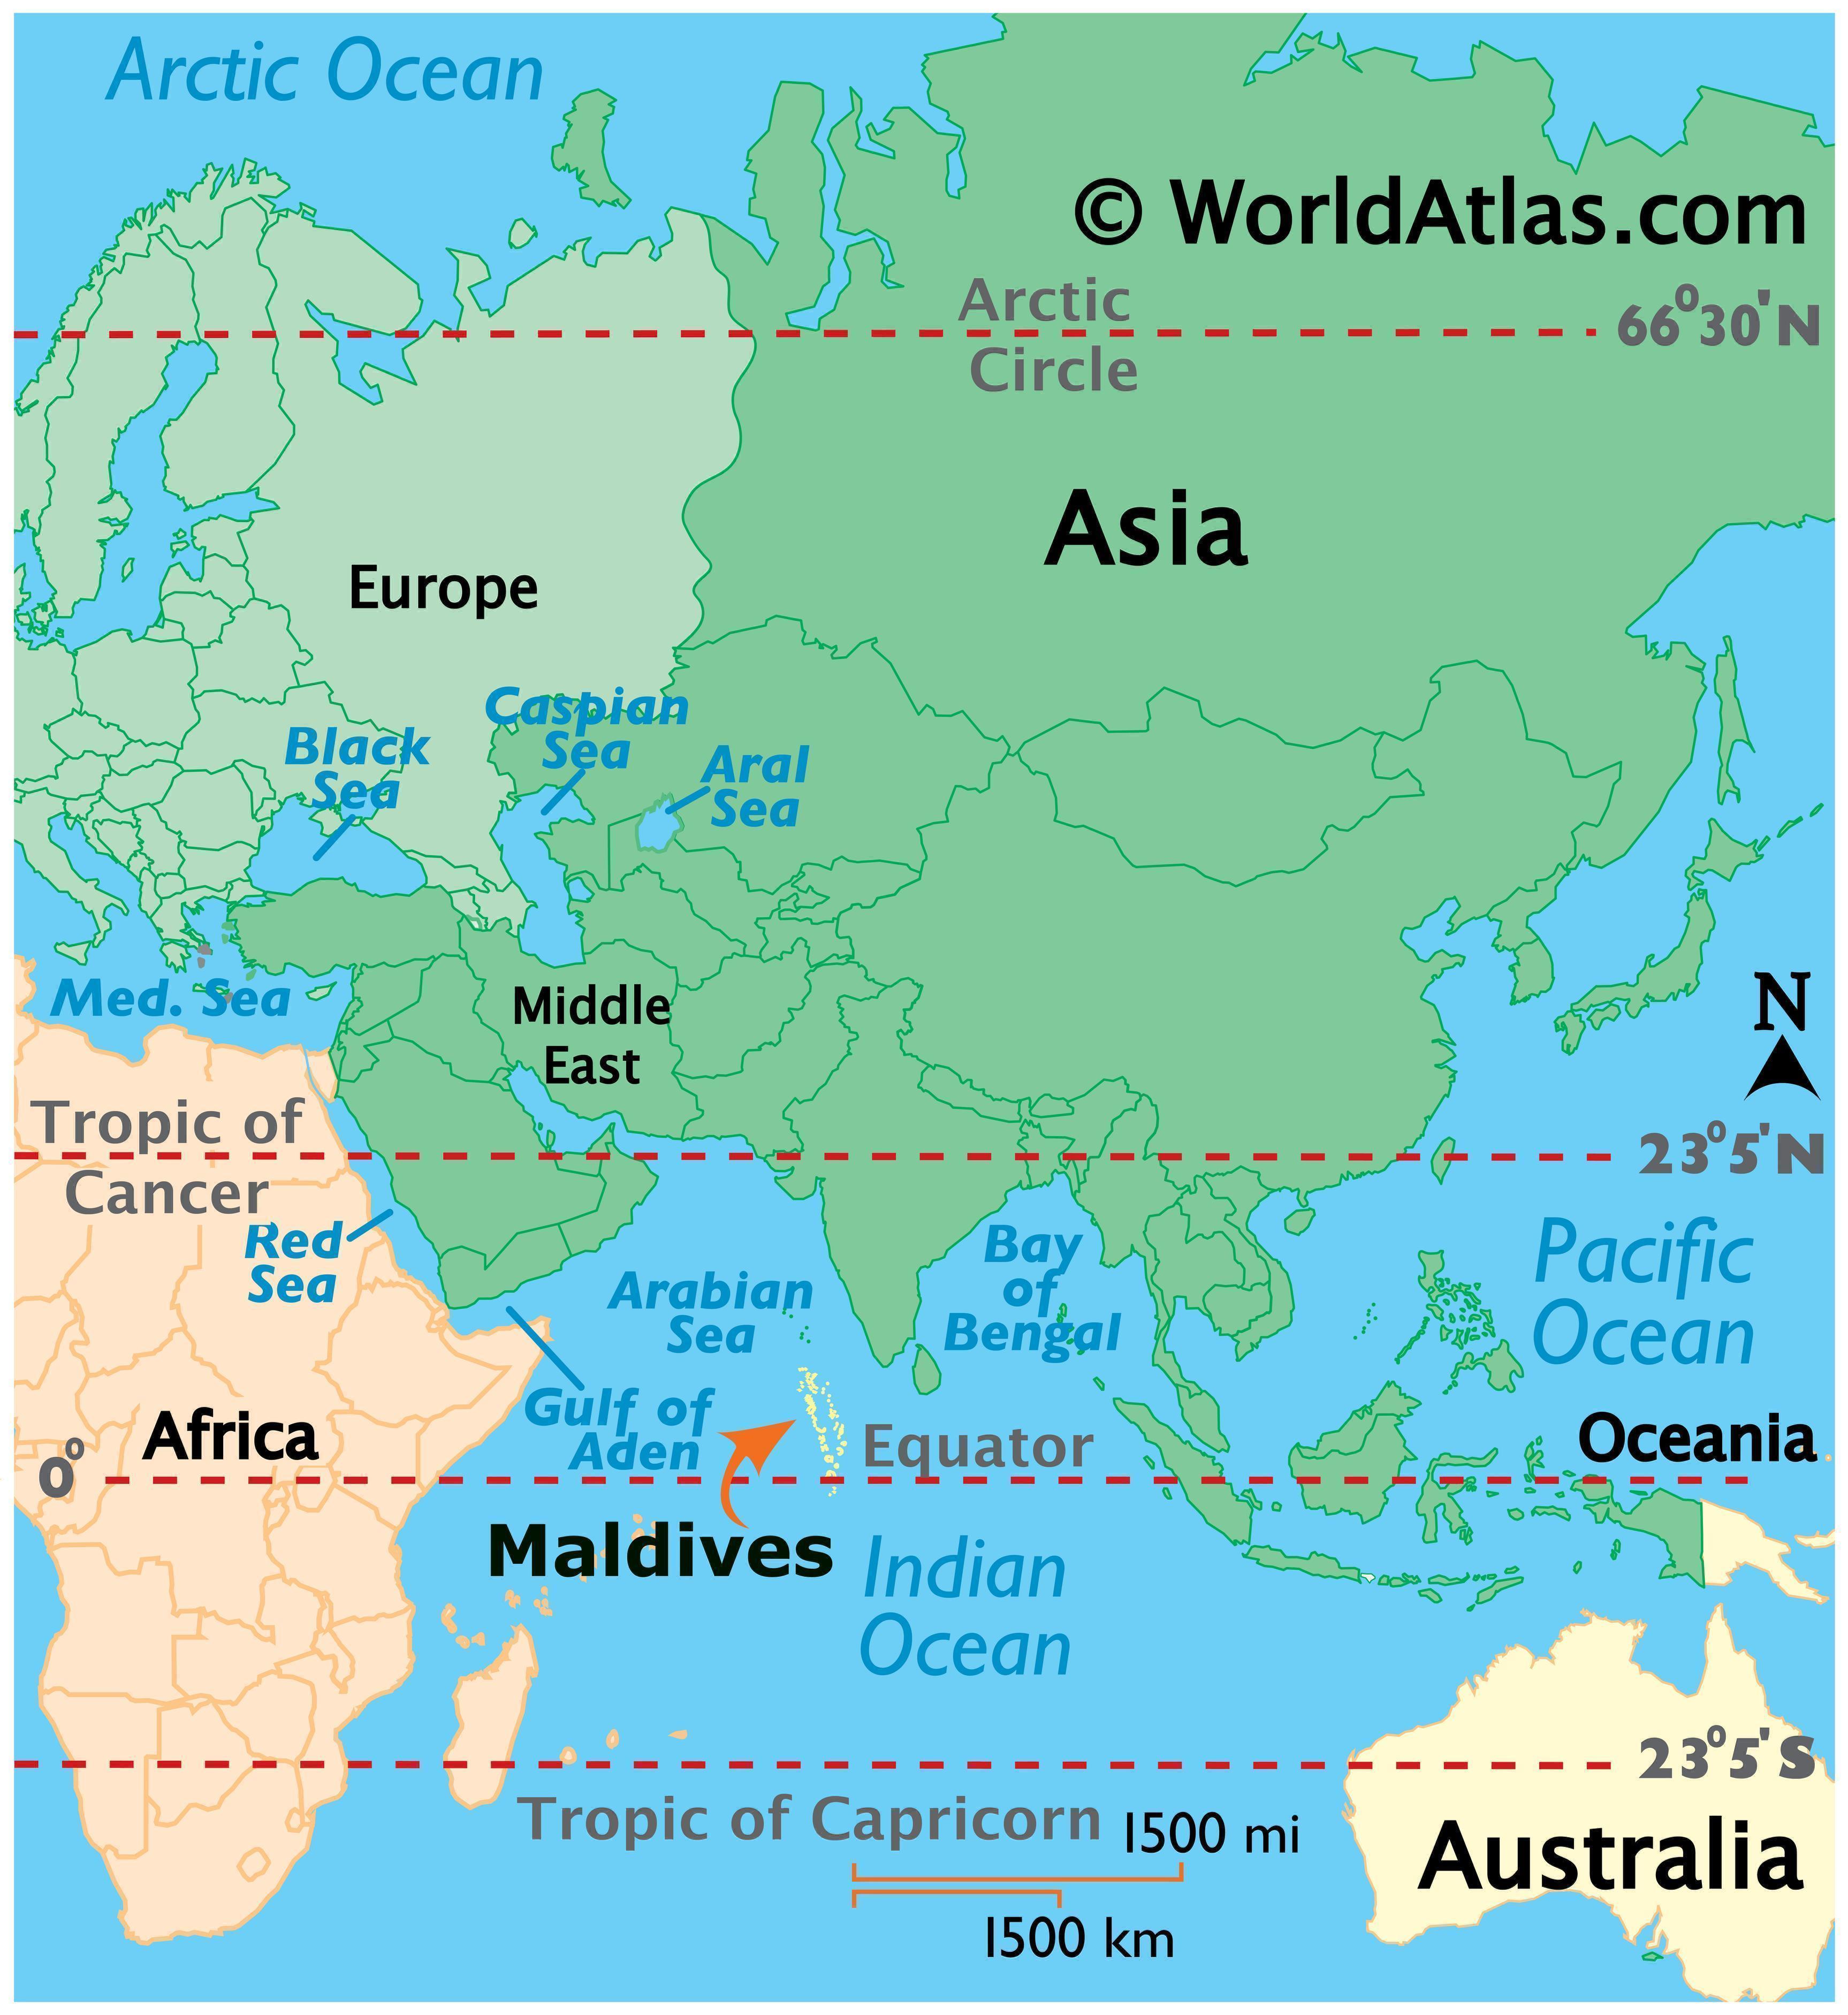 Maldives Map / Geography of Maldives / Map of Maldives - Worldatlas.com